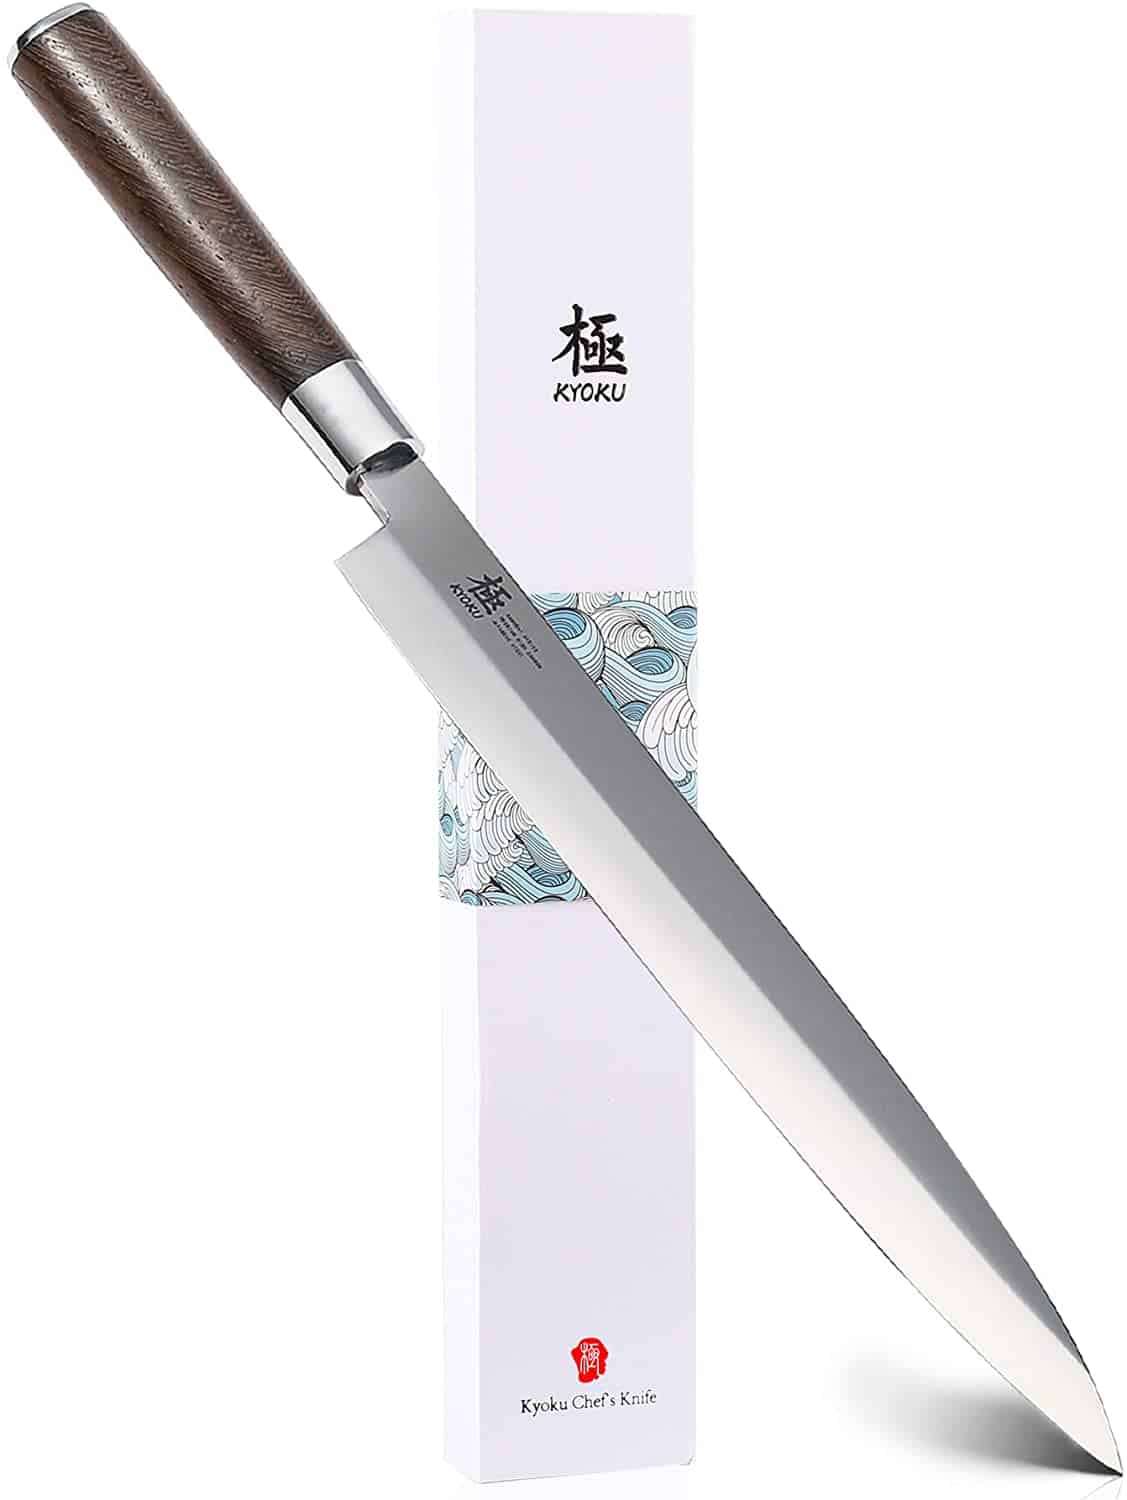 มีดยานางิบะราคาประหยัดที่ดีที่สุด- KYOKU Samurai Series 10.5